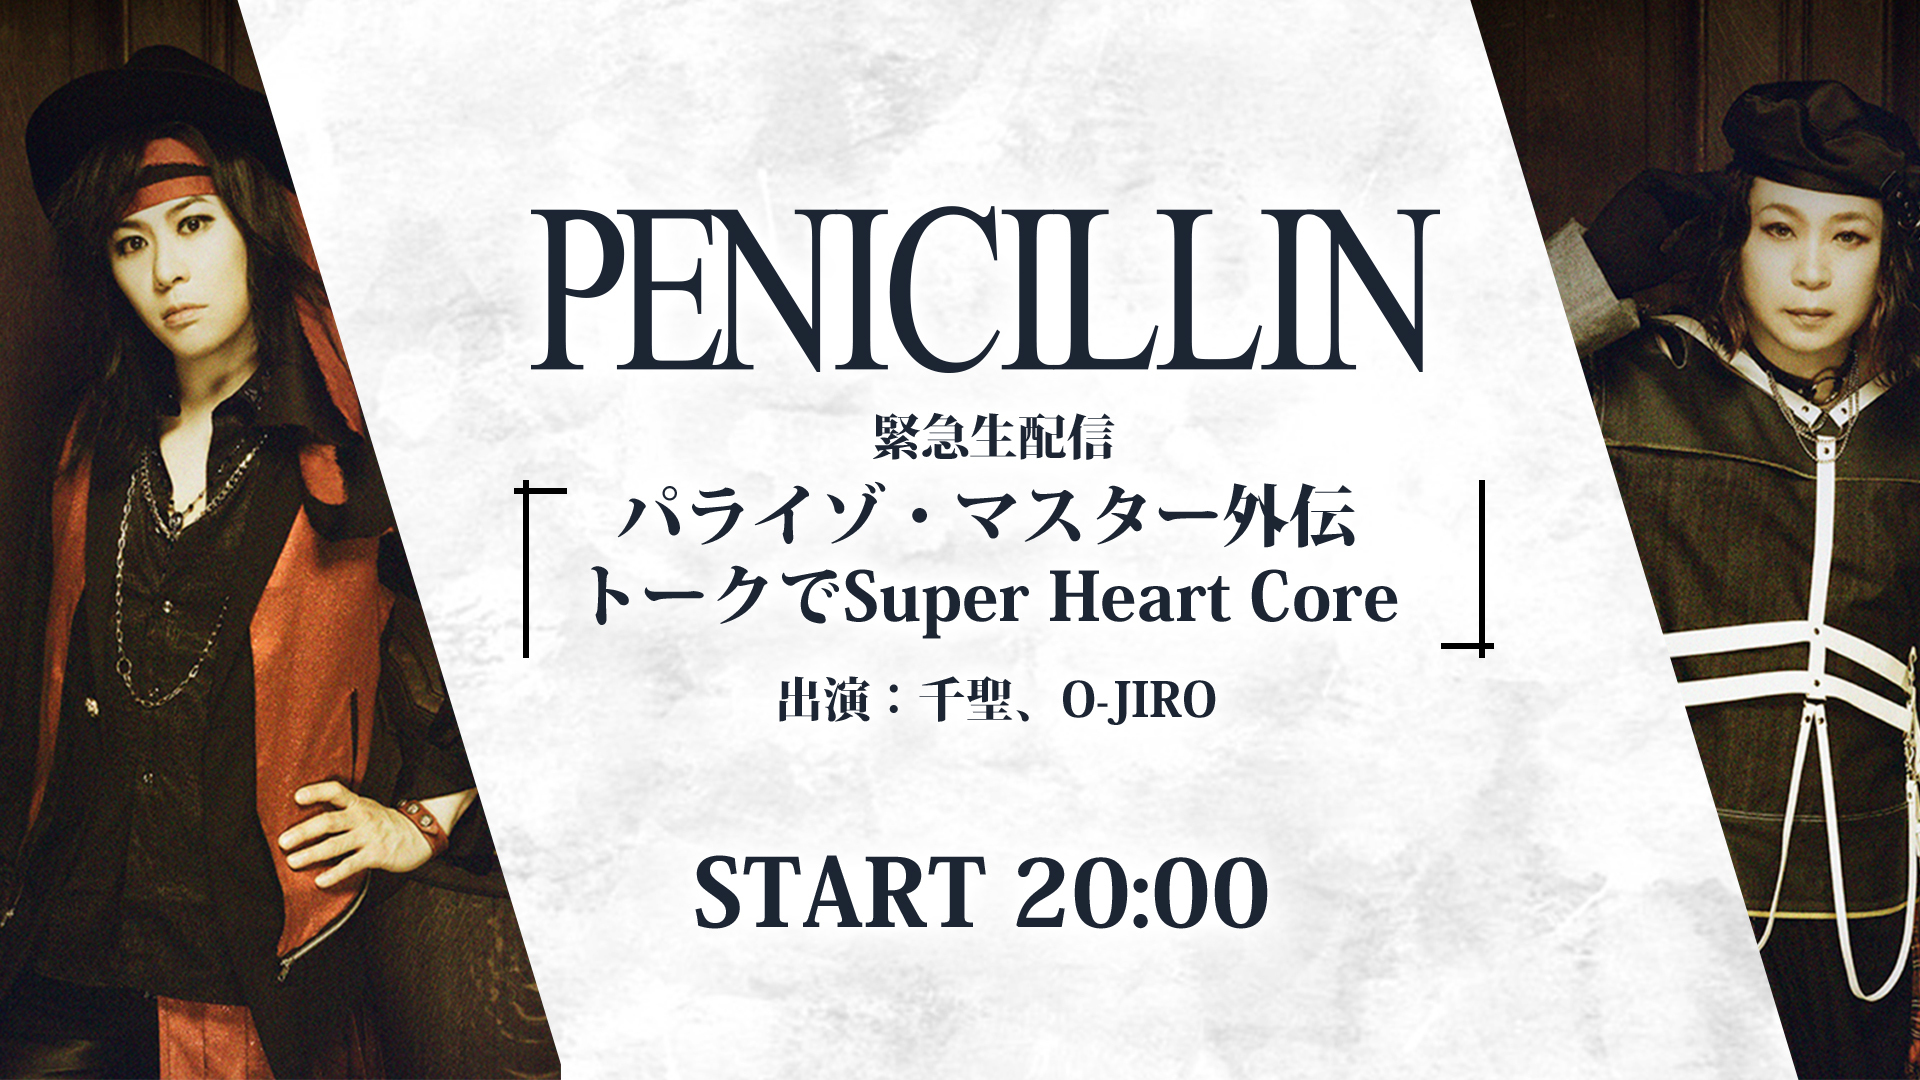 PENICILLIN 30th anniversary TOUR『パライゾ・マスター』～SUPER